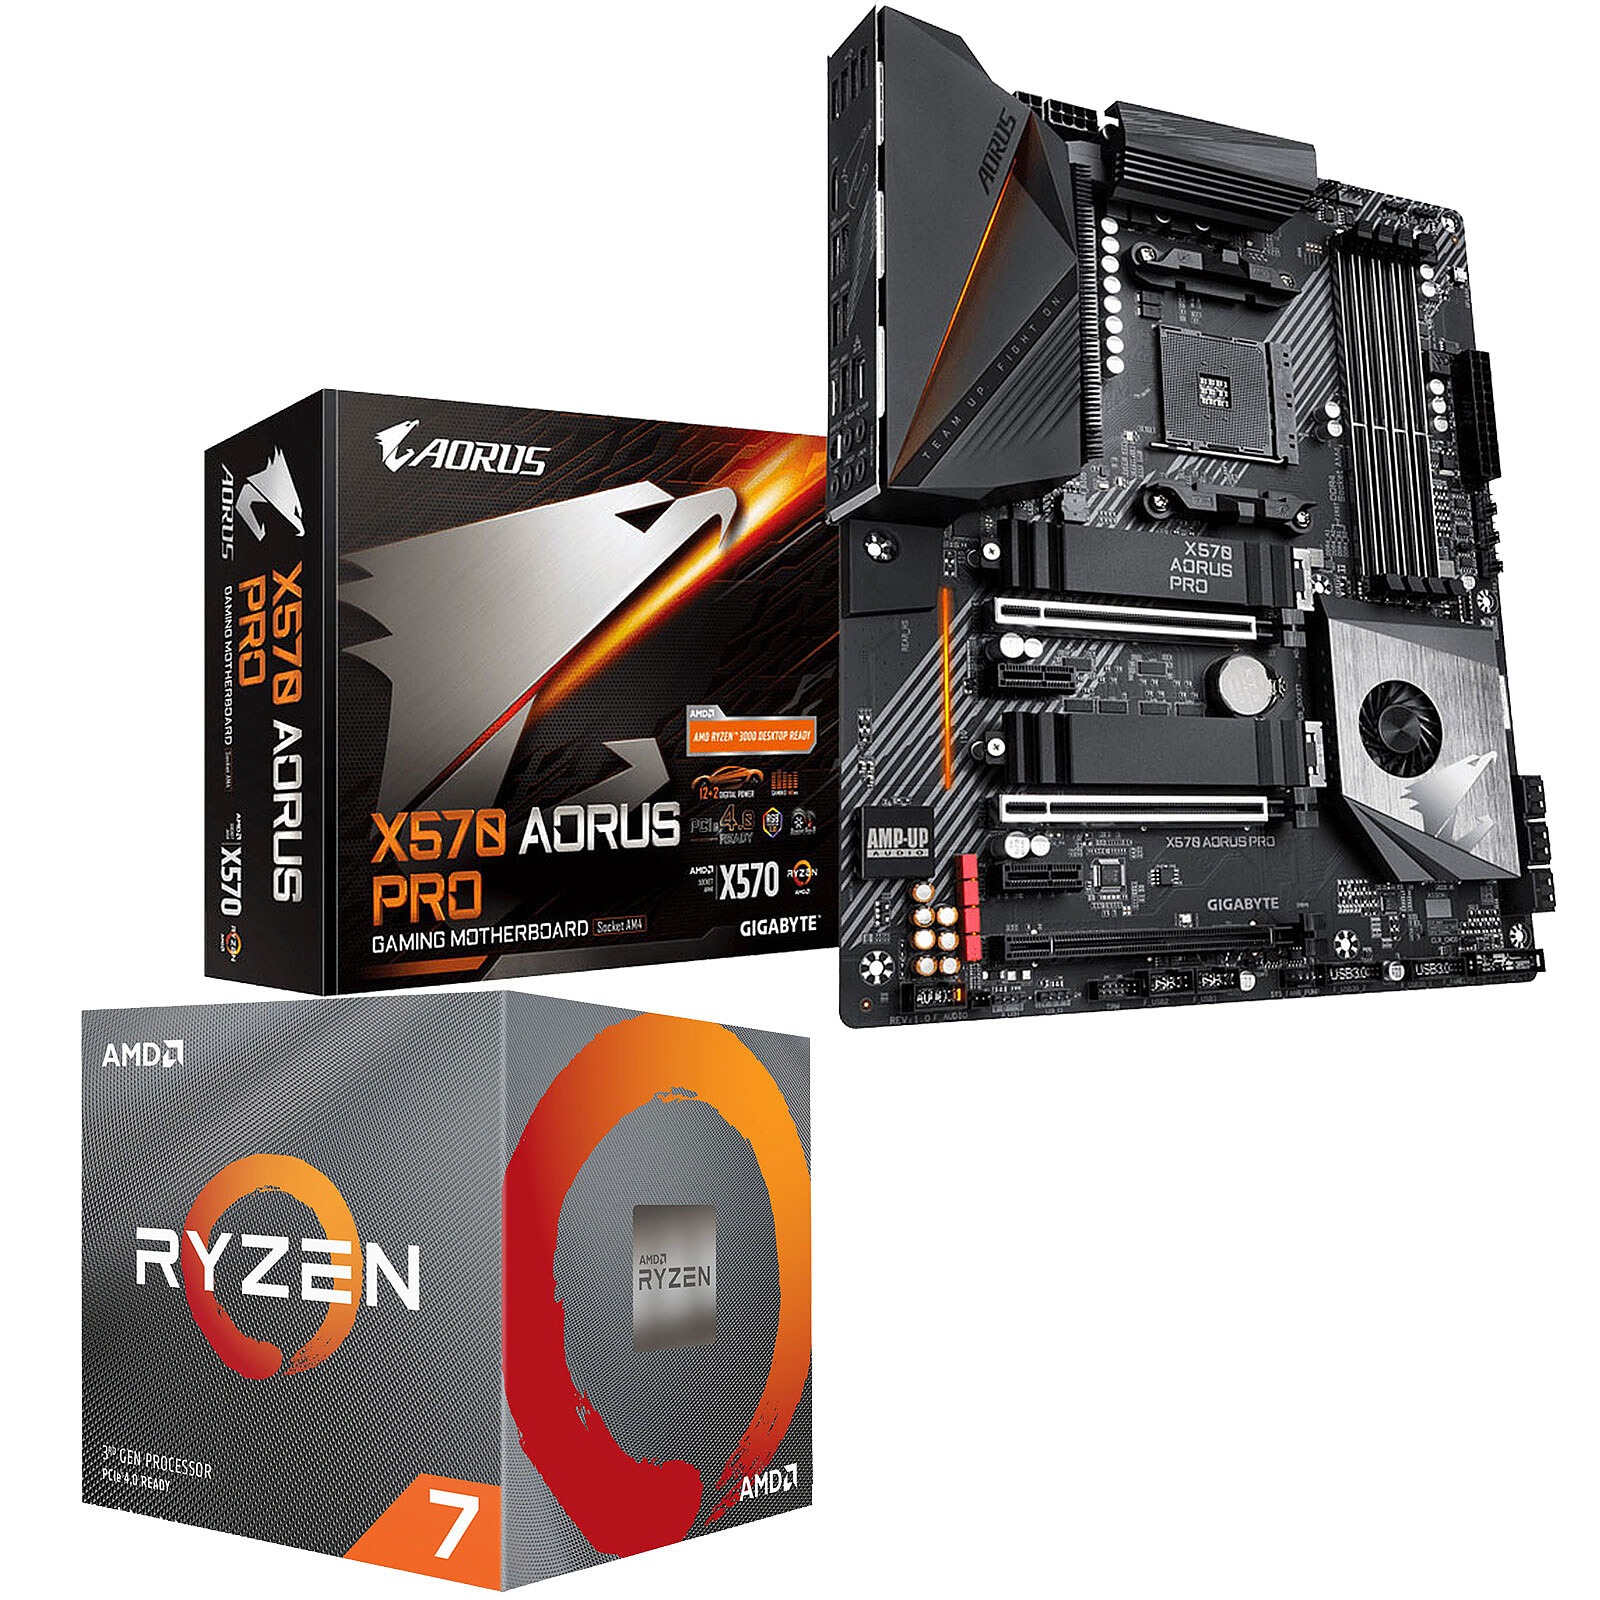 Contracción Creo que Espinas Kit Upgrade PC AMD Ryzen 7 3800X Gigabyte X570 AORUS PRO - Kit  actualizacion Gigabyte en LDLC | ¡Musericordia!